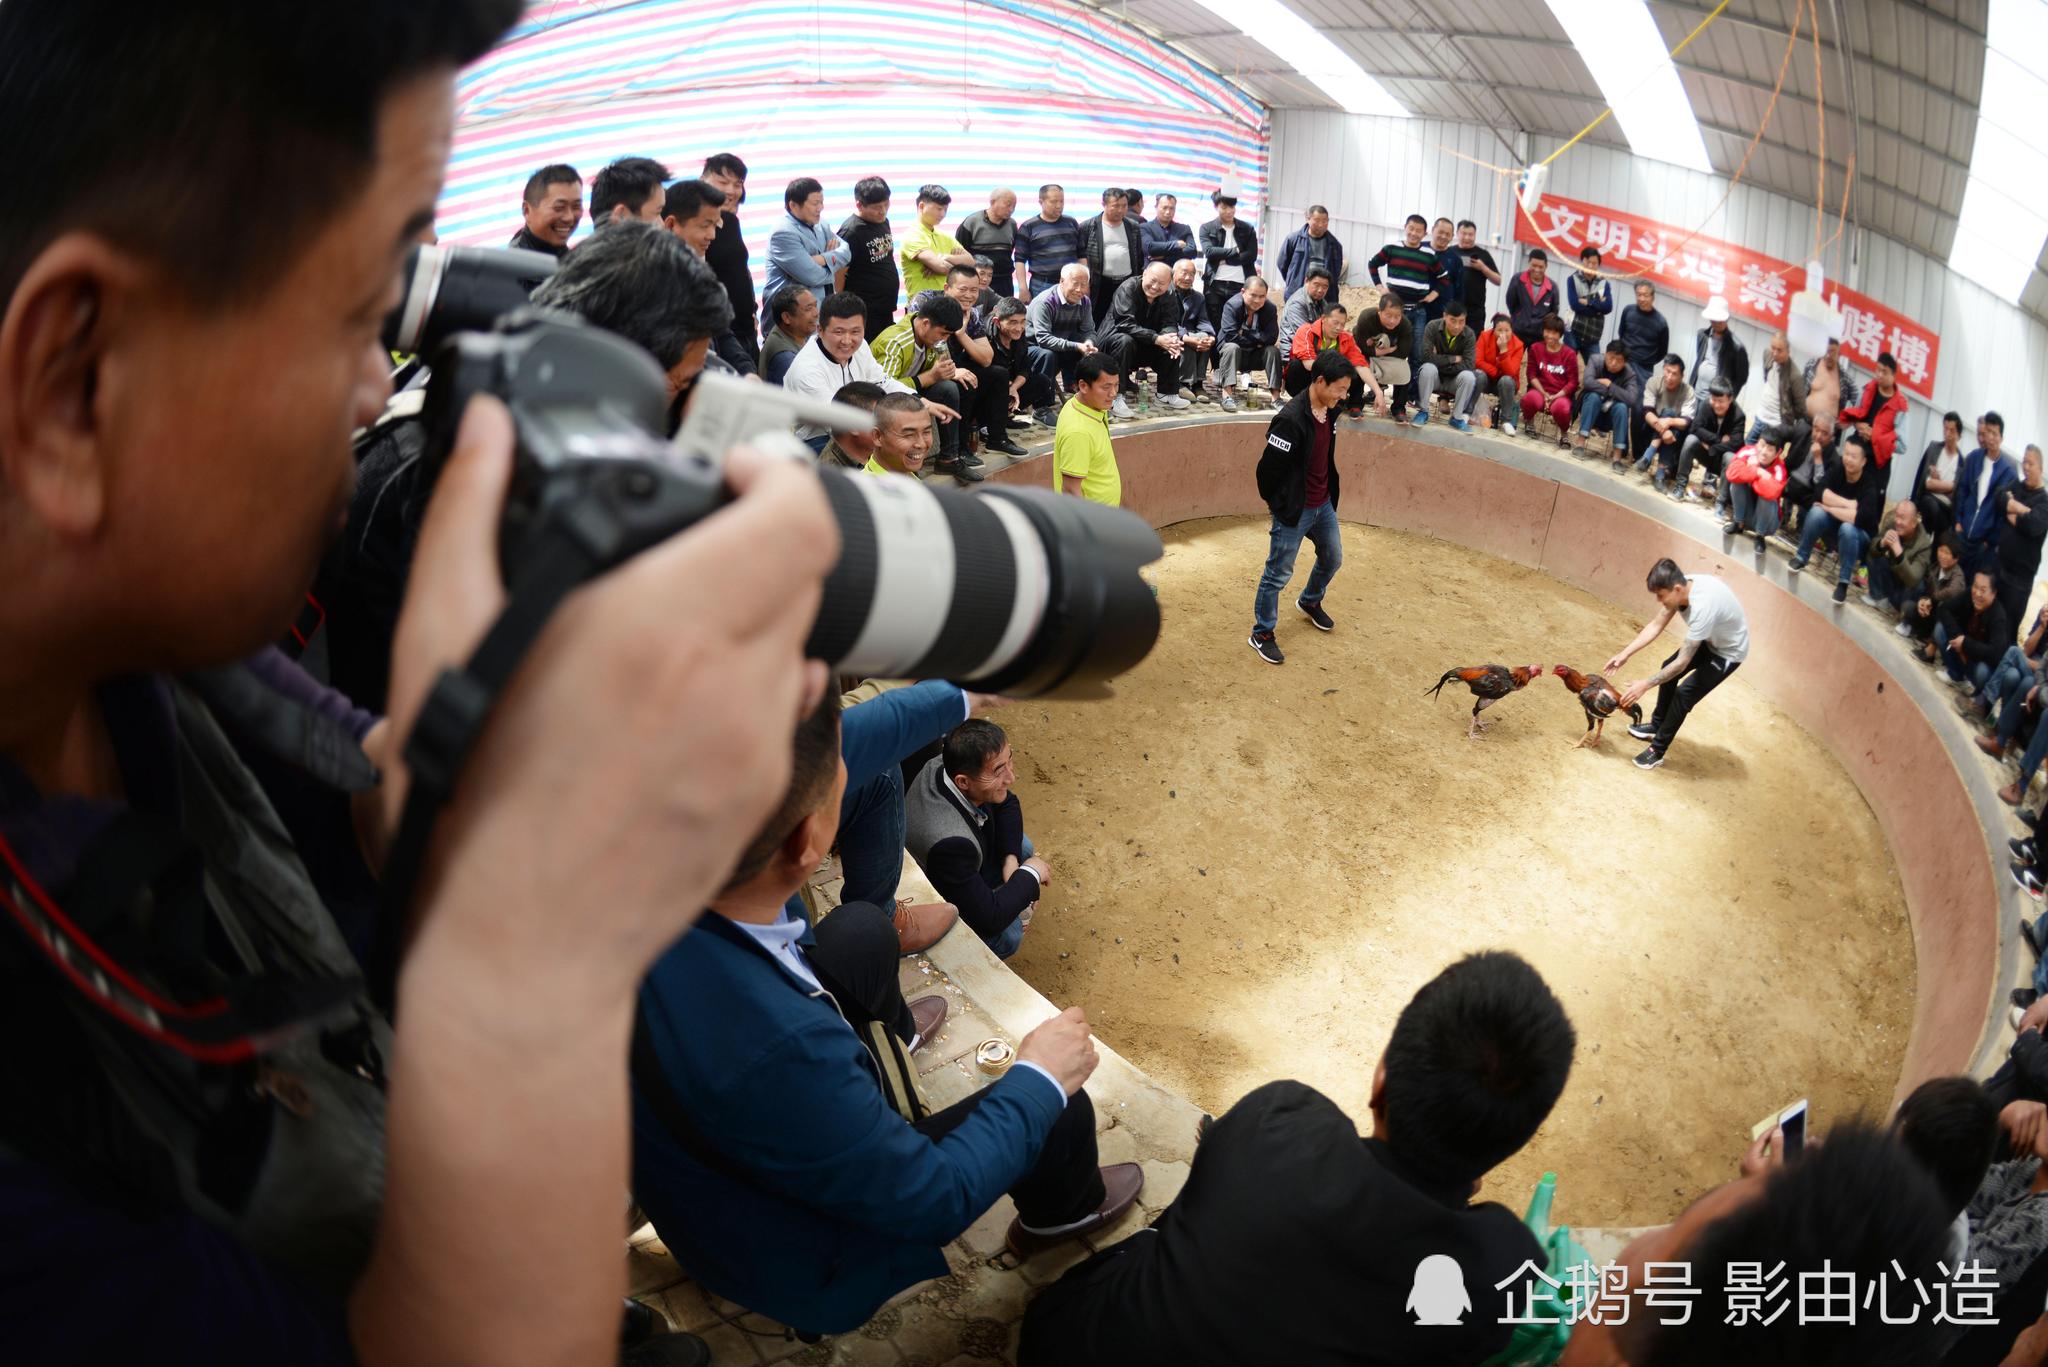 贵州一乡镇举行女子“抓鸡比赛”，拍摄者：完整项目包括选黄豆、挑扁担、抓鸡、插秧_村民_参赛者